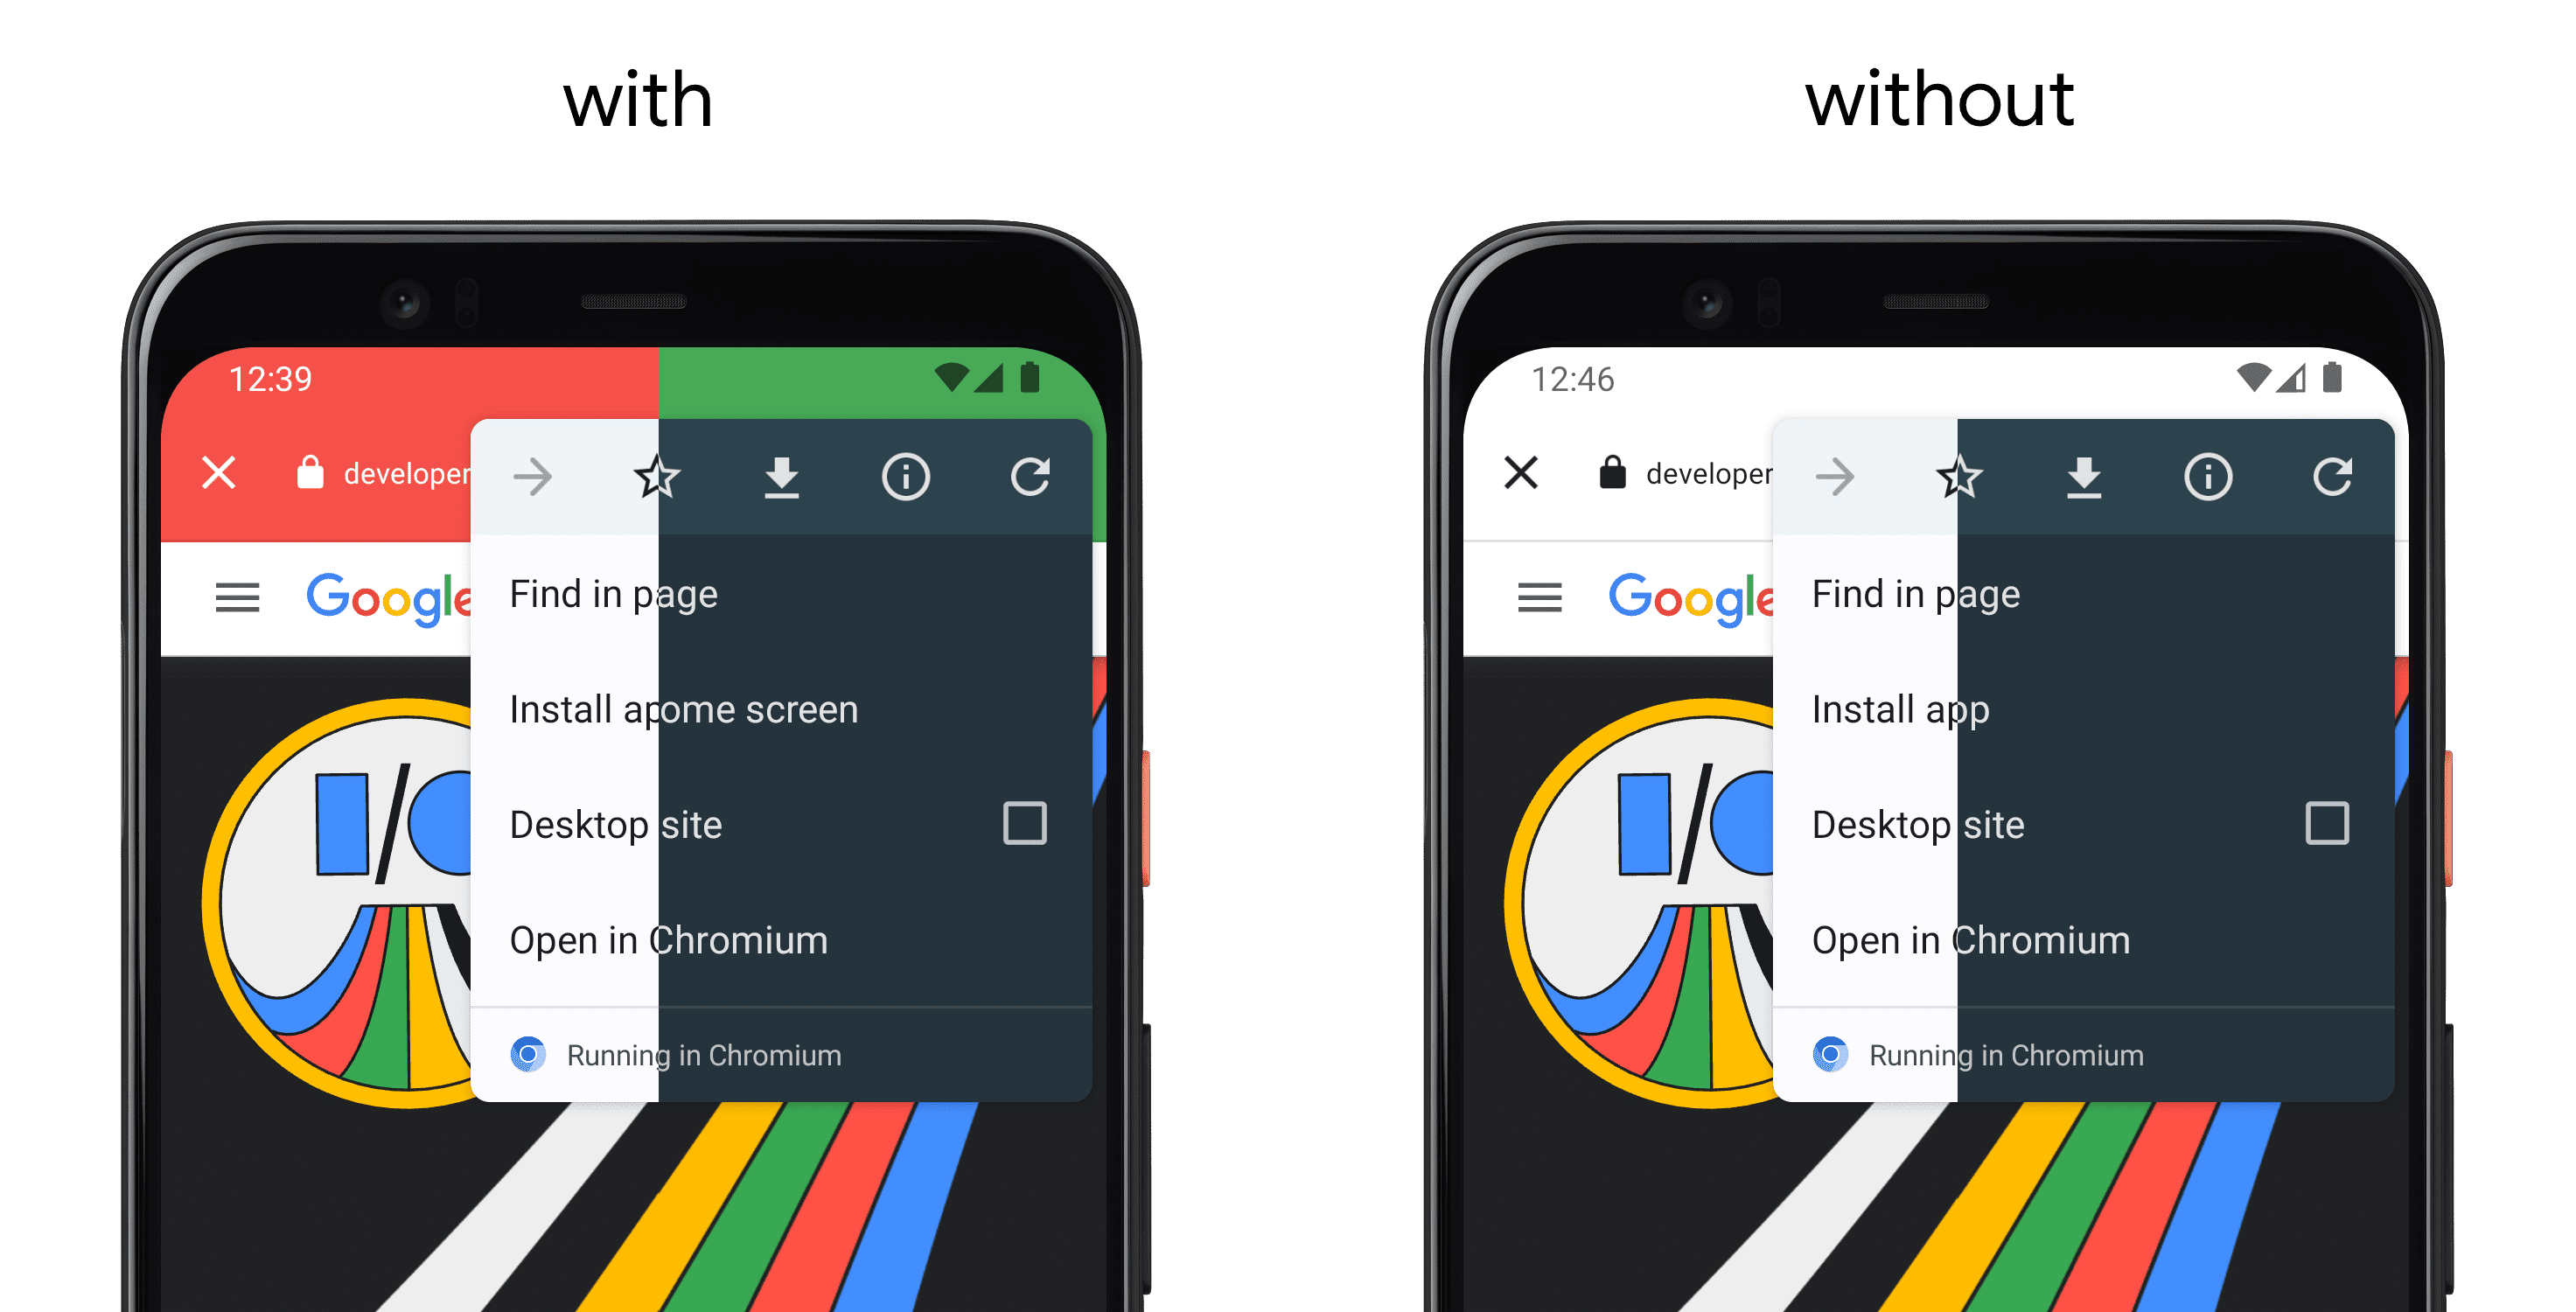 Links ein Smartphone, auf dem eine App mit „setDefaultColorSchemeParams()“ angezeigt wird, und auf der rechten Seite ein separates Smartphone ohne API